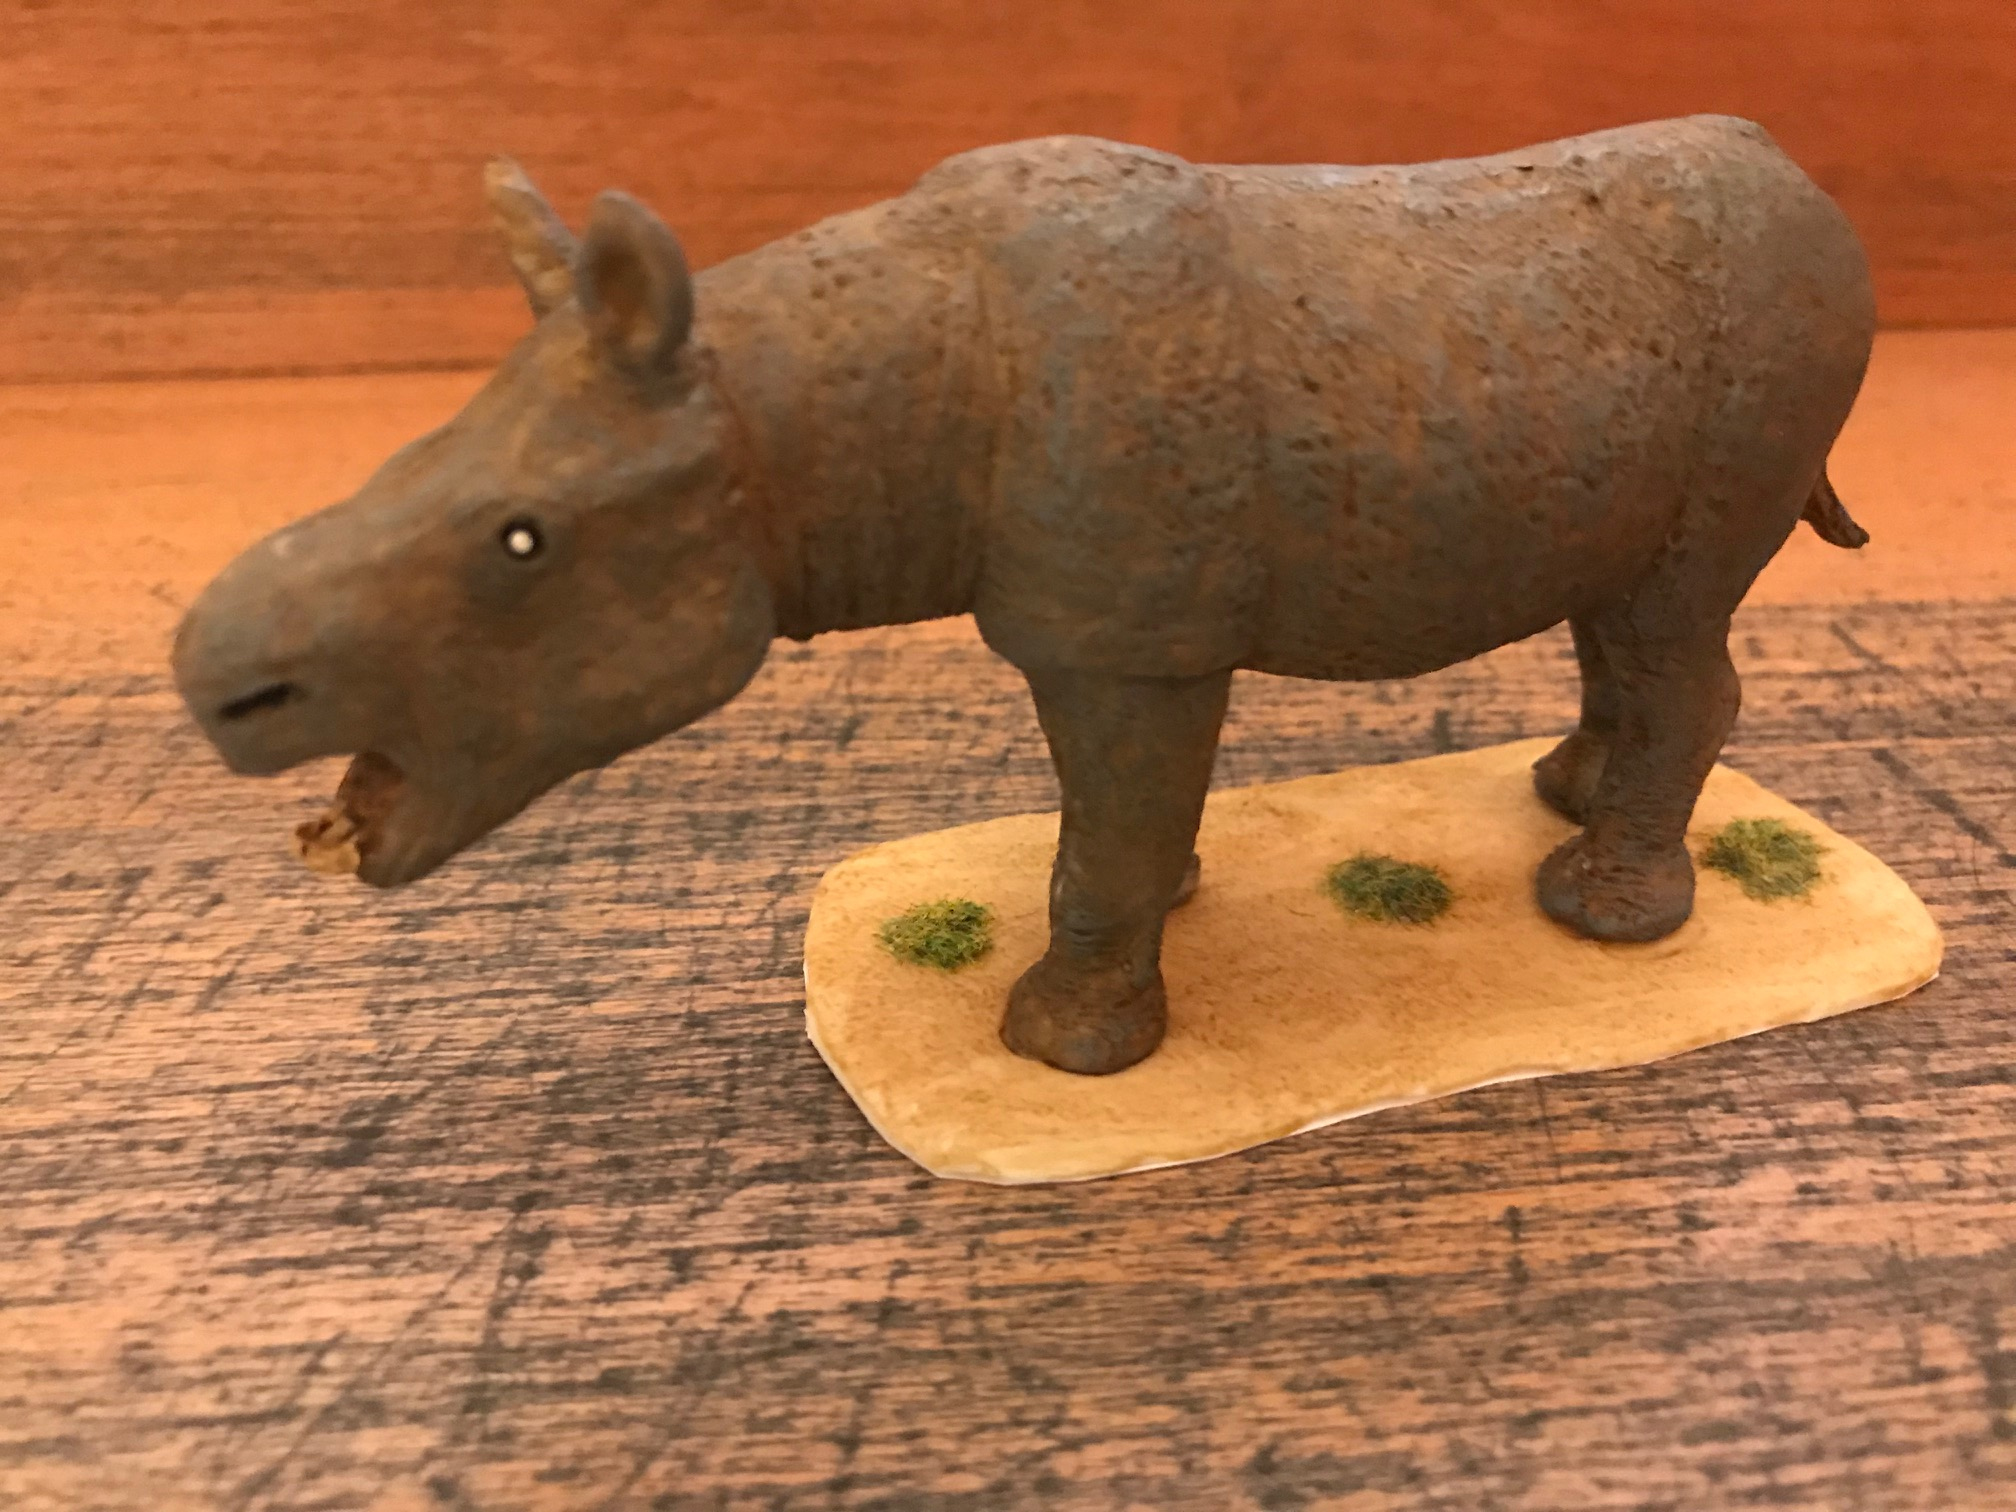 Aceratherium incisivum, reproducción artesanal pintada a mano edición limitada del rinoceronte sin cuerno del Mioceno